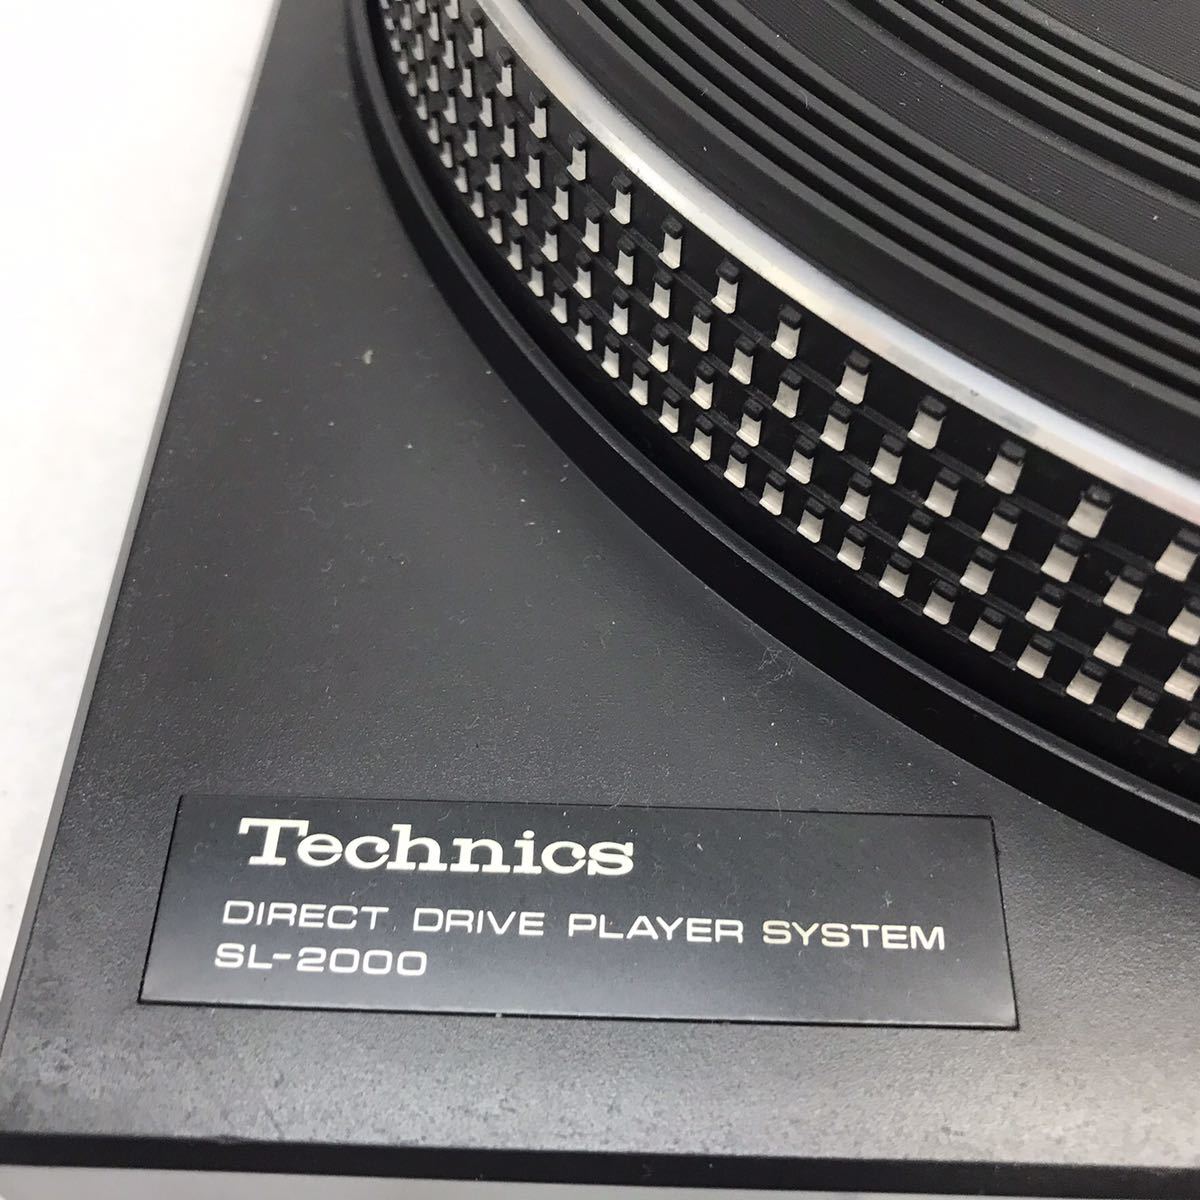  Cサト2 Technics SL-2000 Manual Direct Drive Turn Table 動作未確認レコードプレイヤー ターンテーブル ダイレクトドライブ _画像4